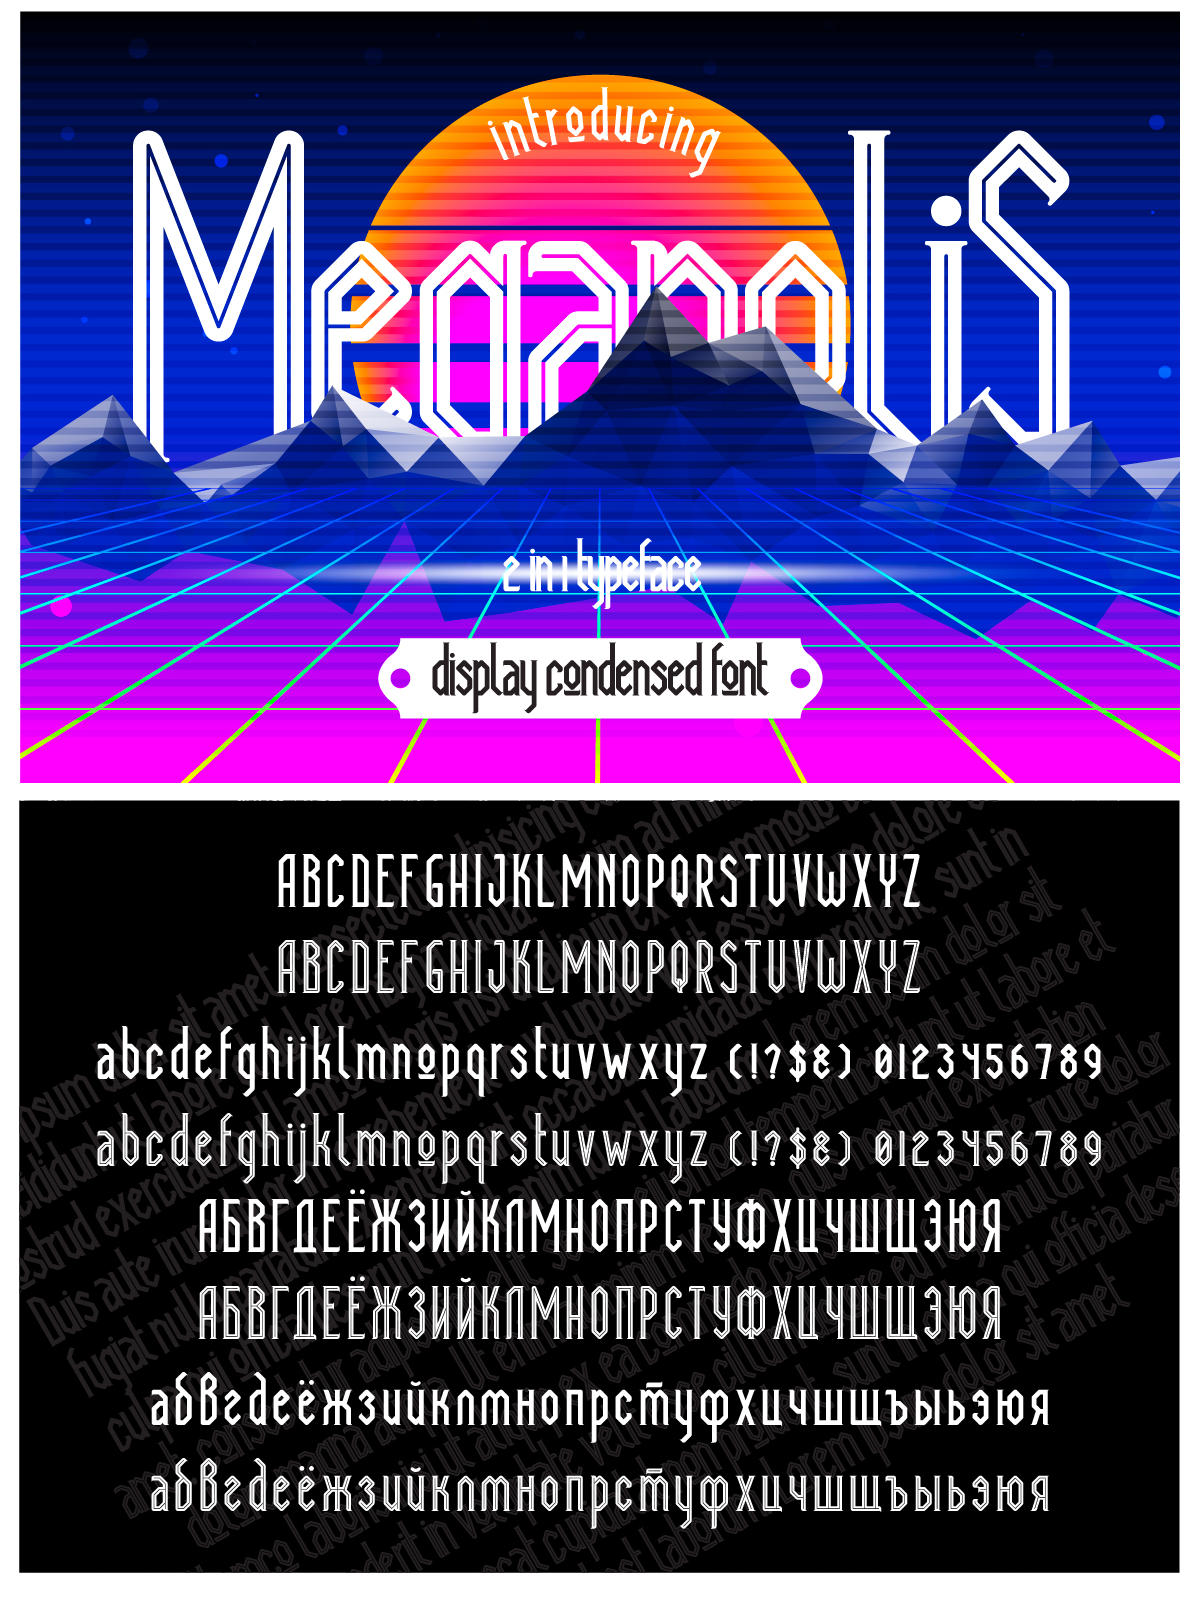 Megapolis font pinterest image preview.